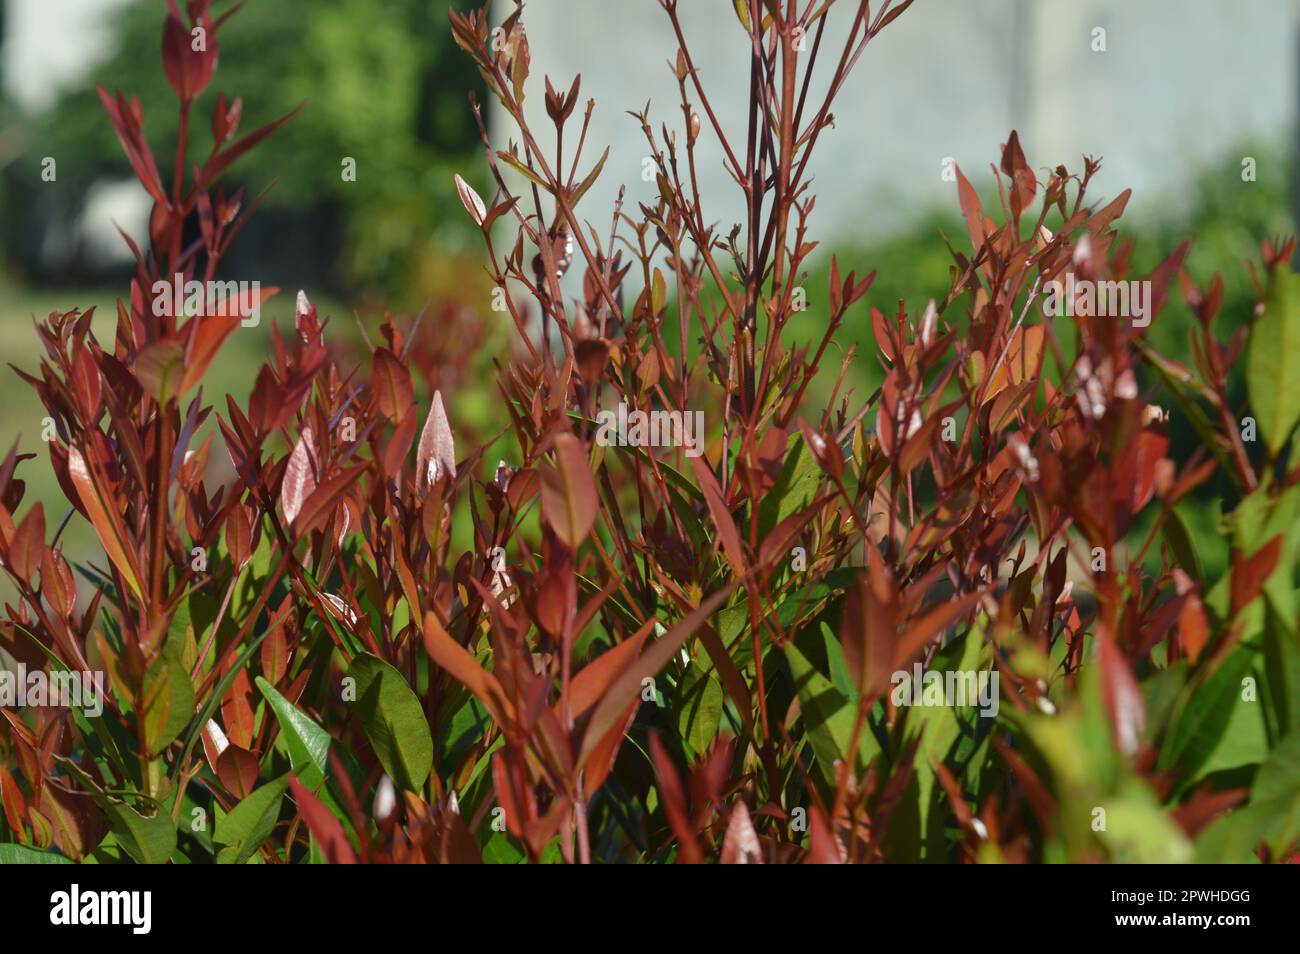 Fuoco selettivo, profondità di campo ristretta, pianta ornamentale con nome scientifico syzygium australe che cresce nei giardini, originaria dell'Australia orientale Foto Stock